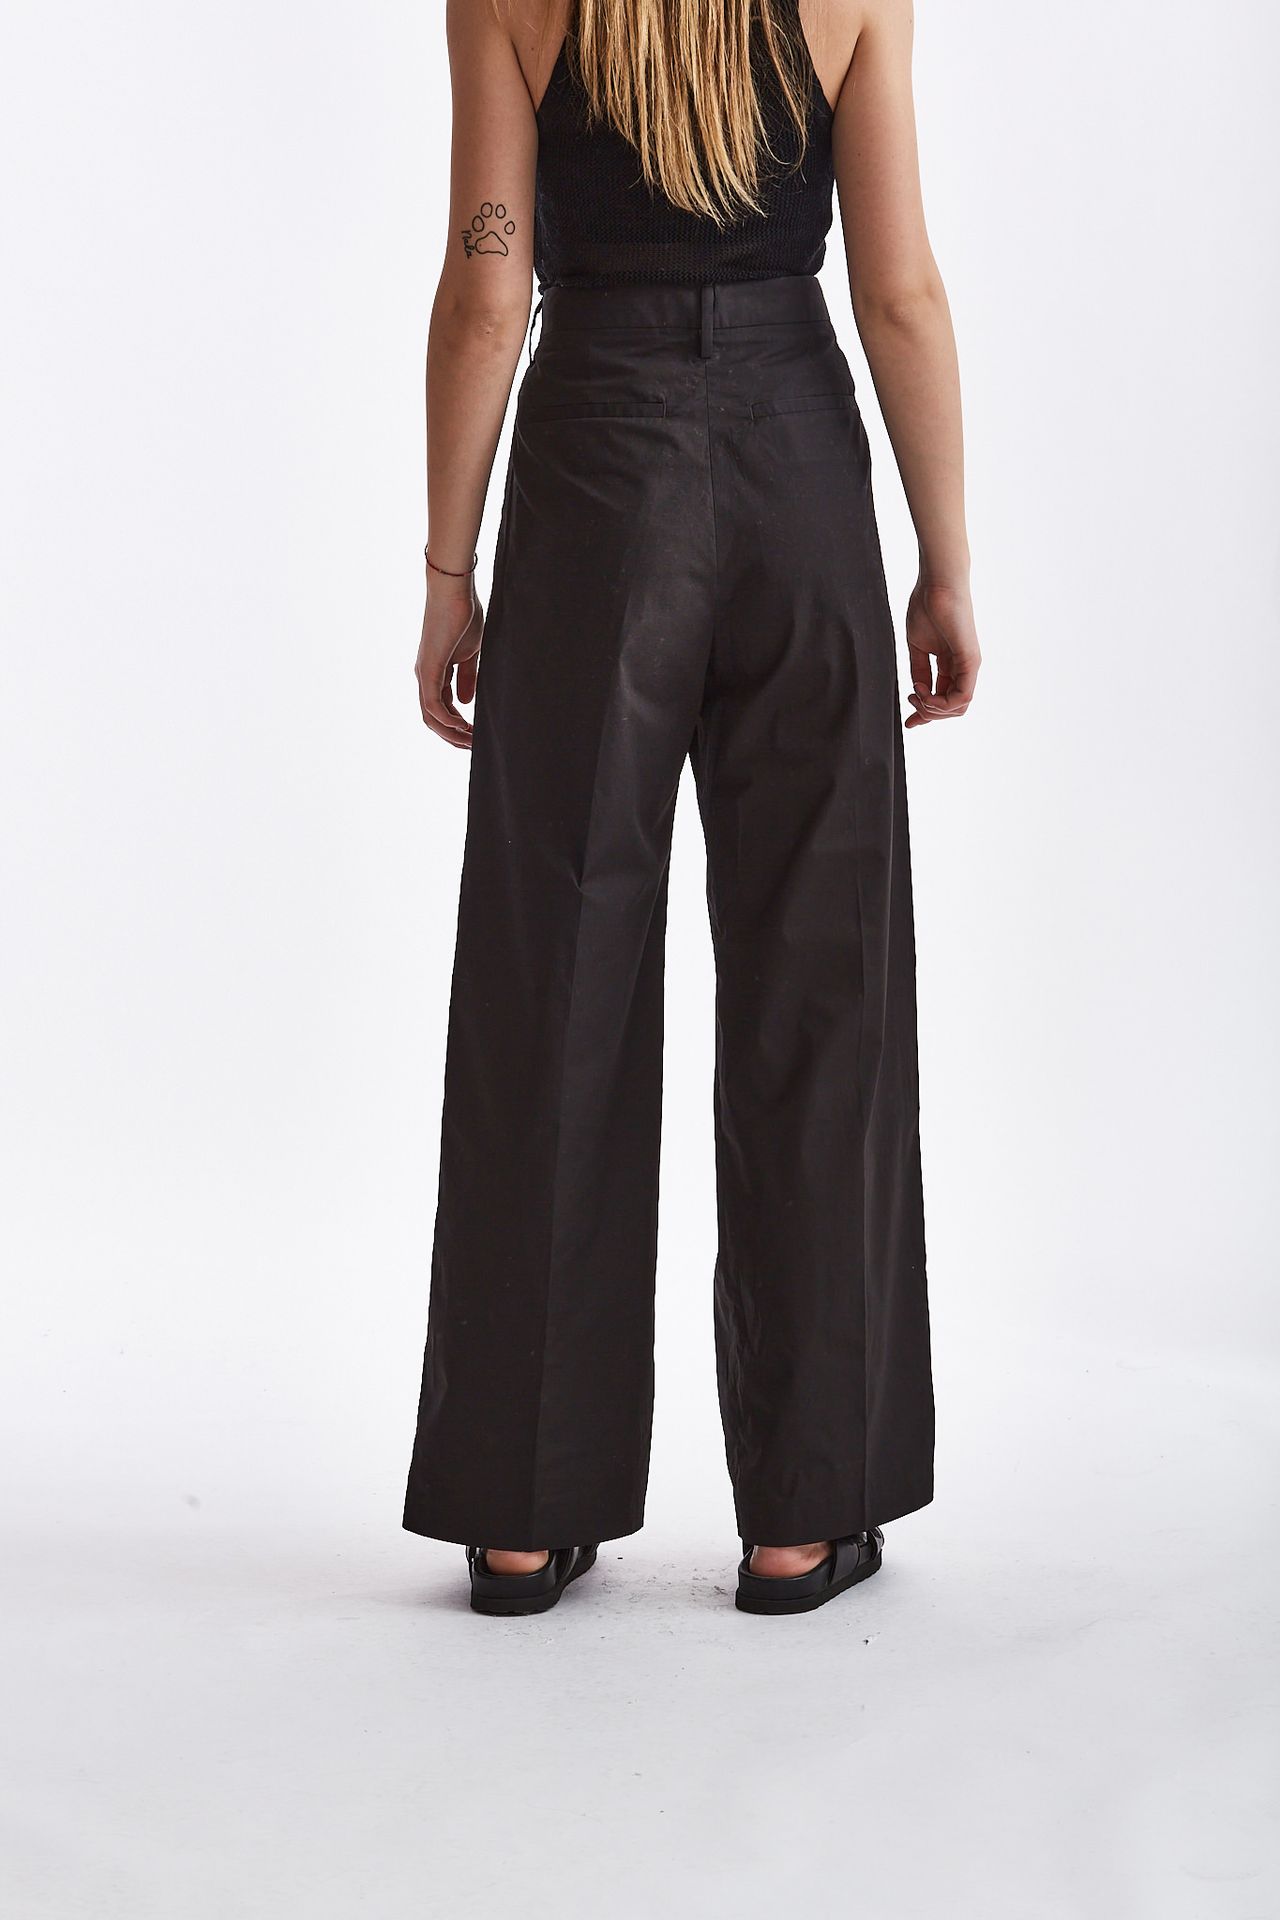 Pantalone FAIRMONT in cotone nero